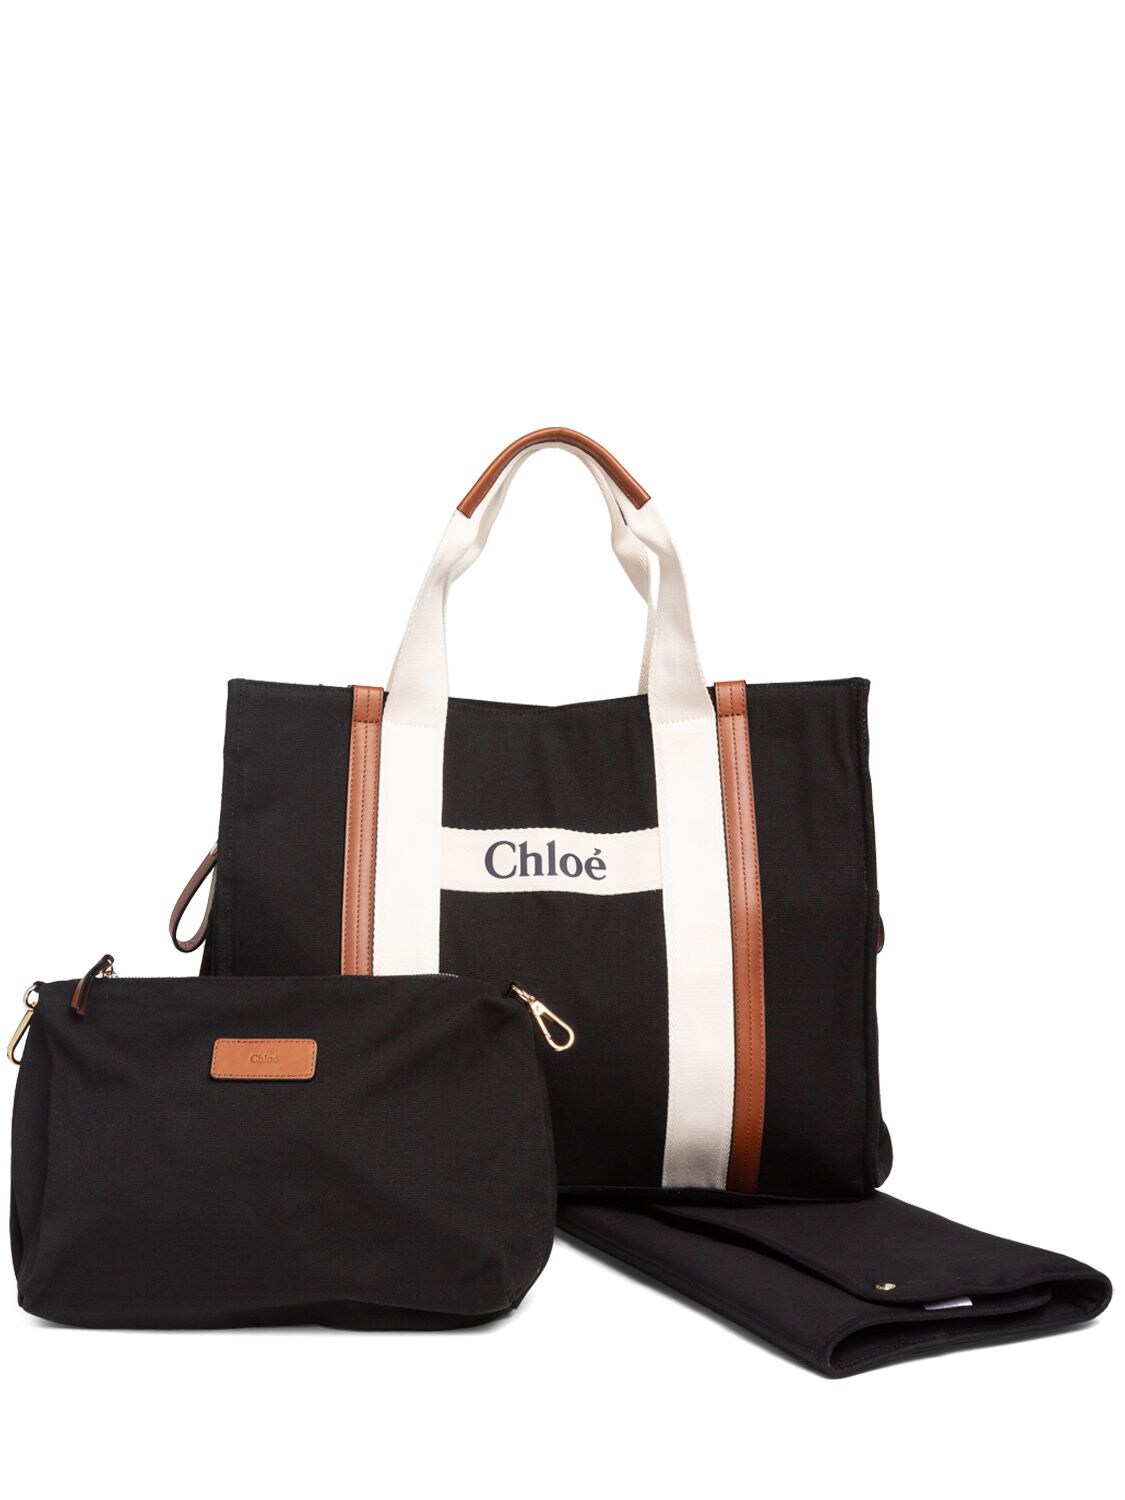 Chloé Girls' Bags